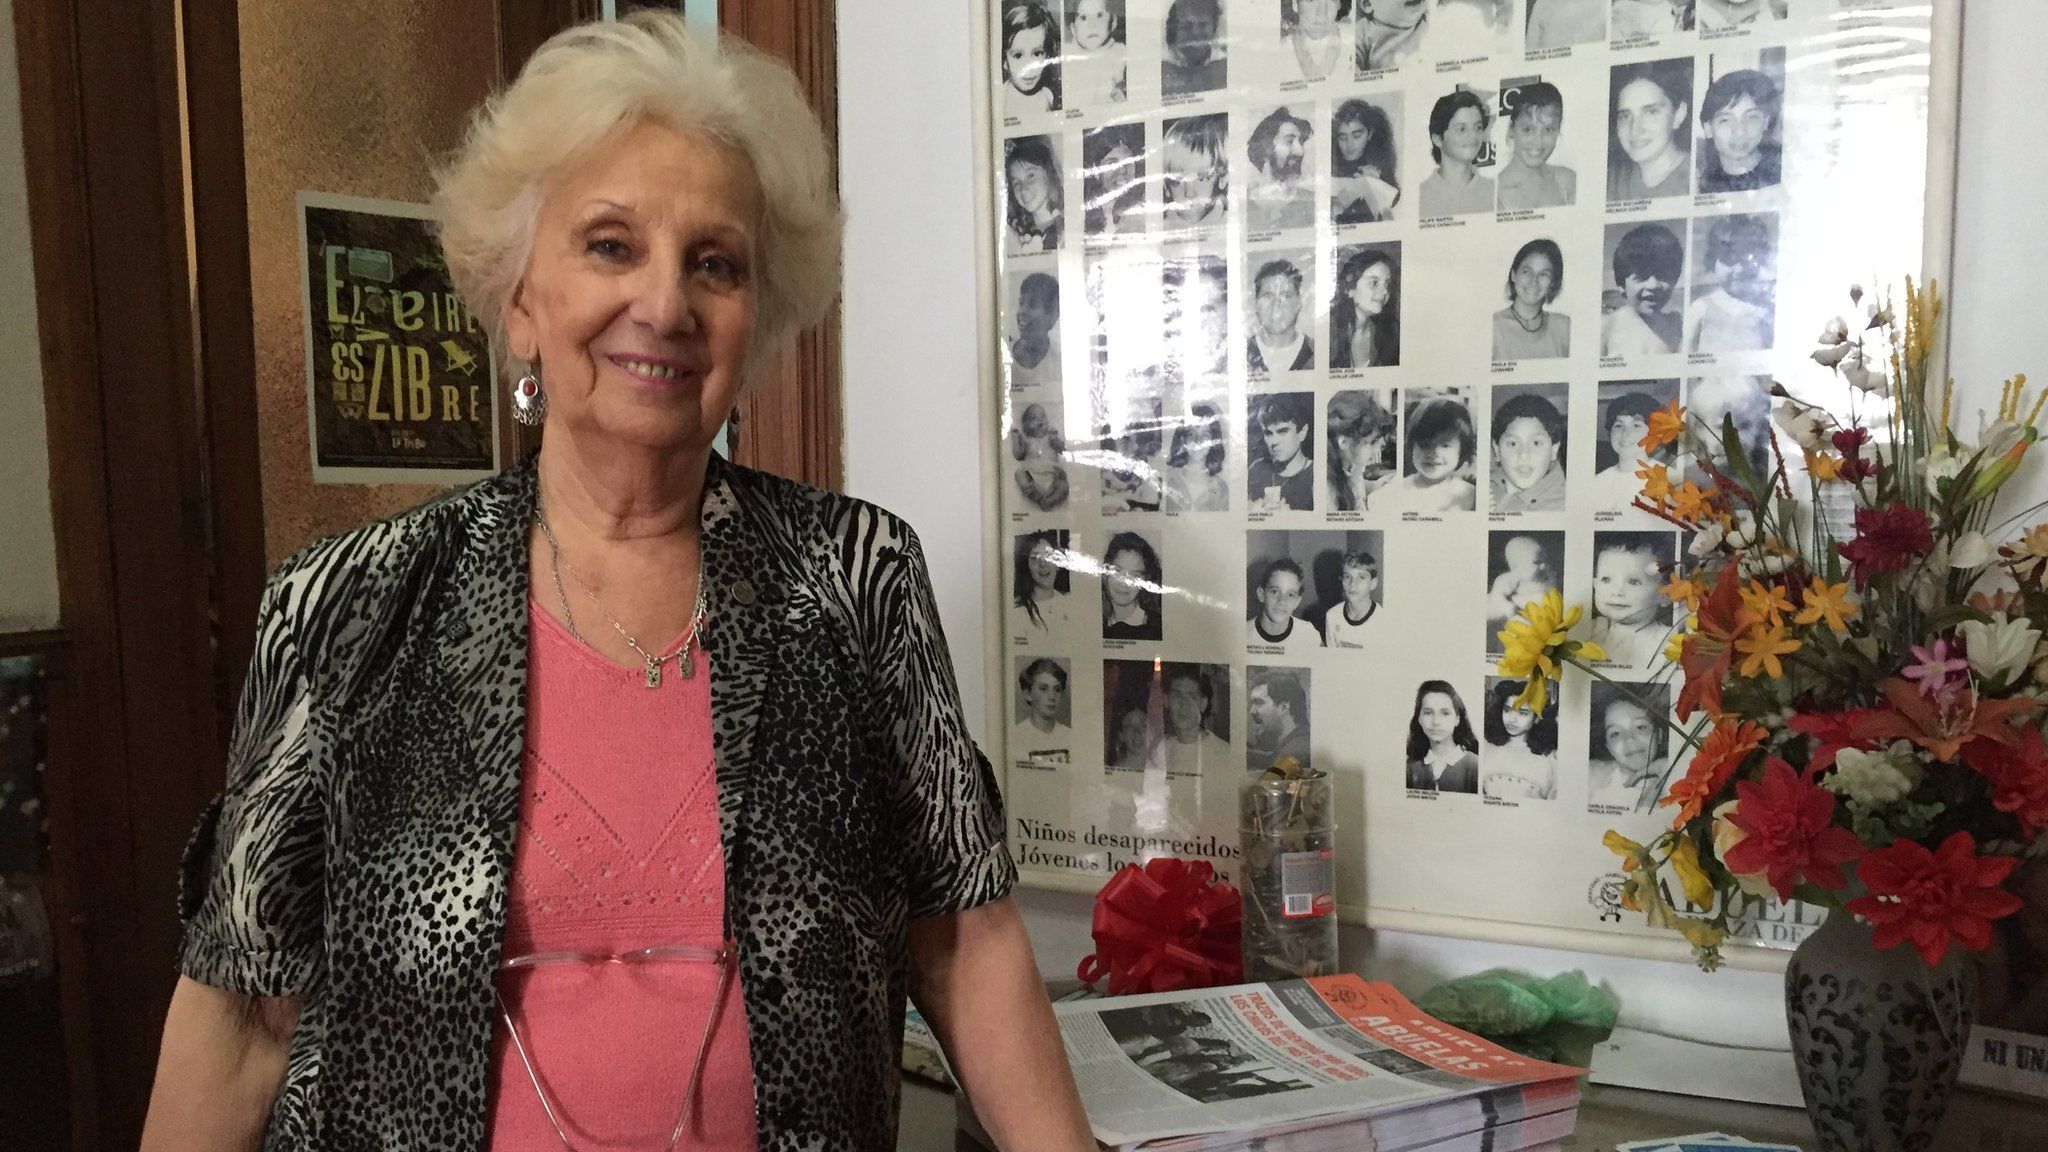 Estela de Carlotto, president of Argentine human rights organization Abuelas de Plaza de Mayo (Grandmothers of Plaza de Mayo)